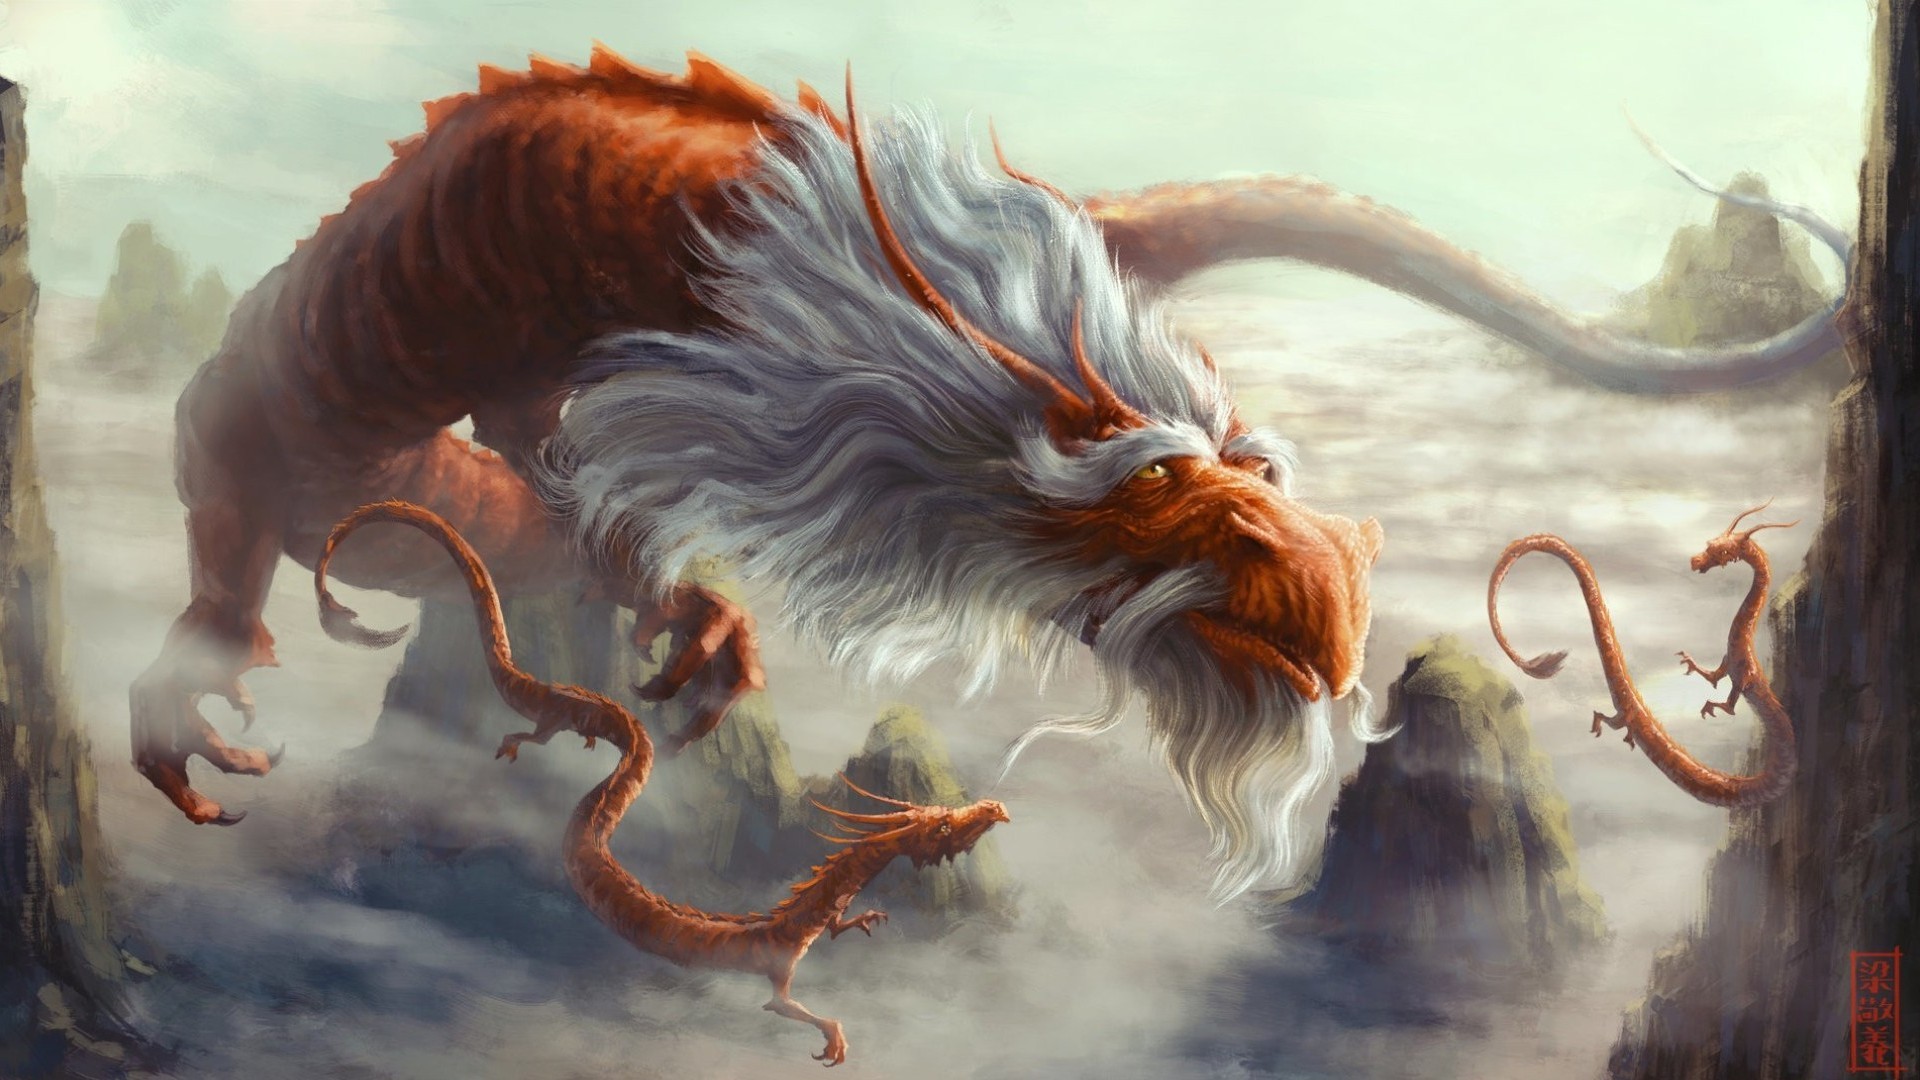 fond d'écran dragon hd,oeuvre de cg,mythologie,personnage fictif,illustration